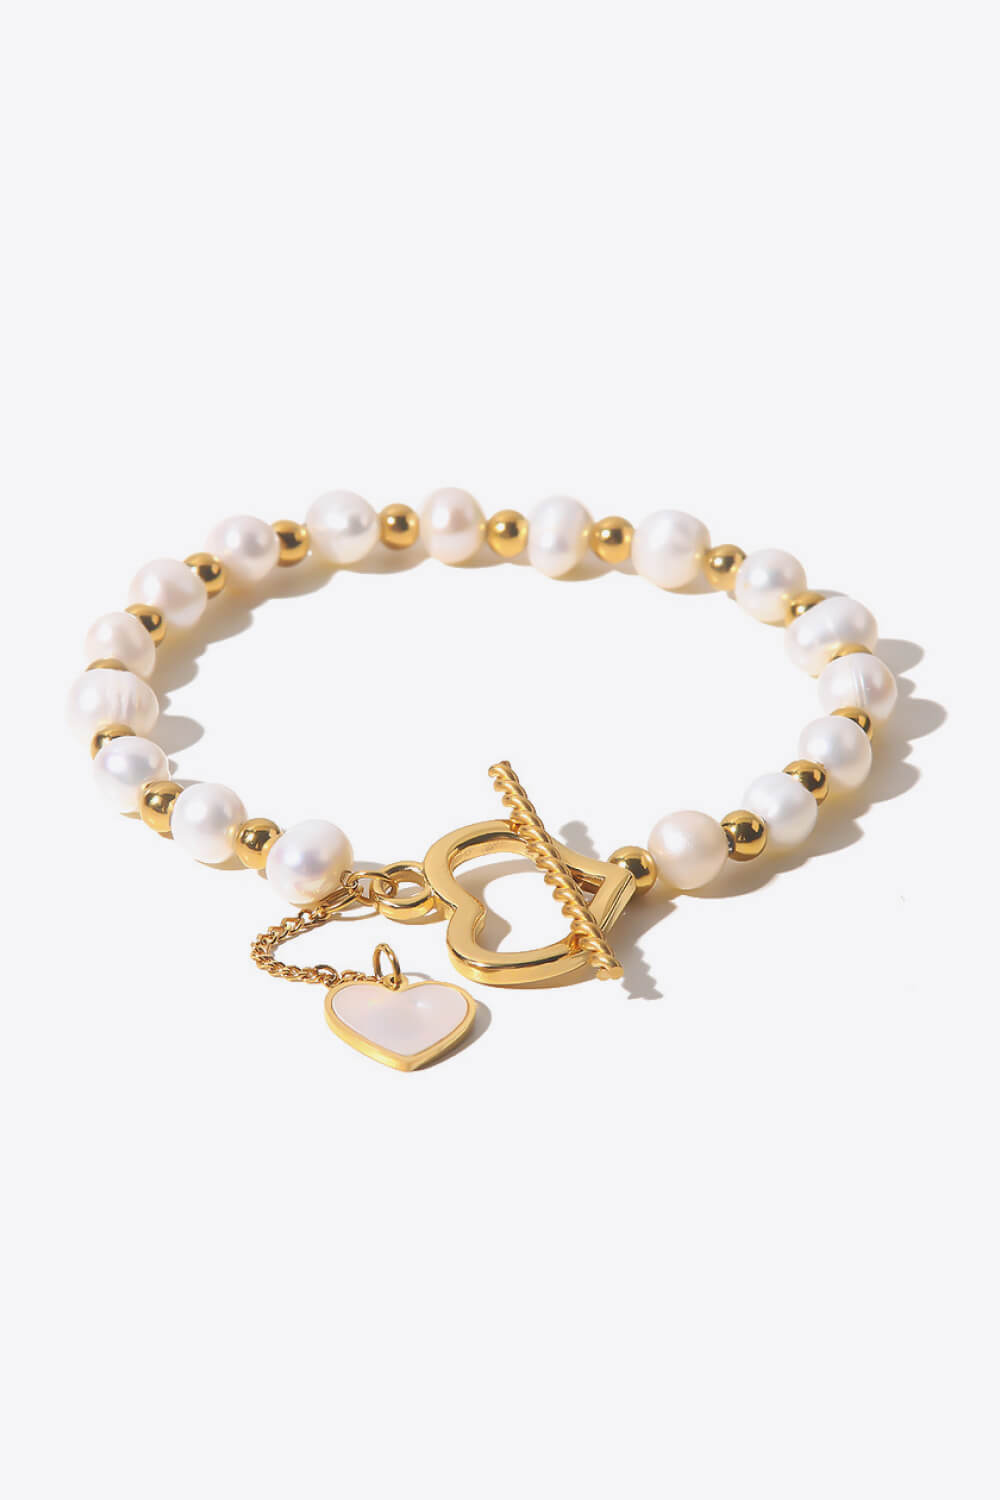 Freshwater Pearl Heart Charm Bracelet - Gold / One Size - Women’s Jewelry - Bracelets - 1 - 2024